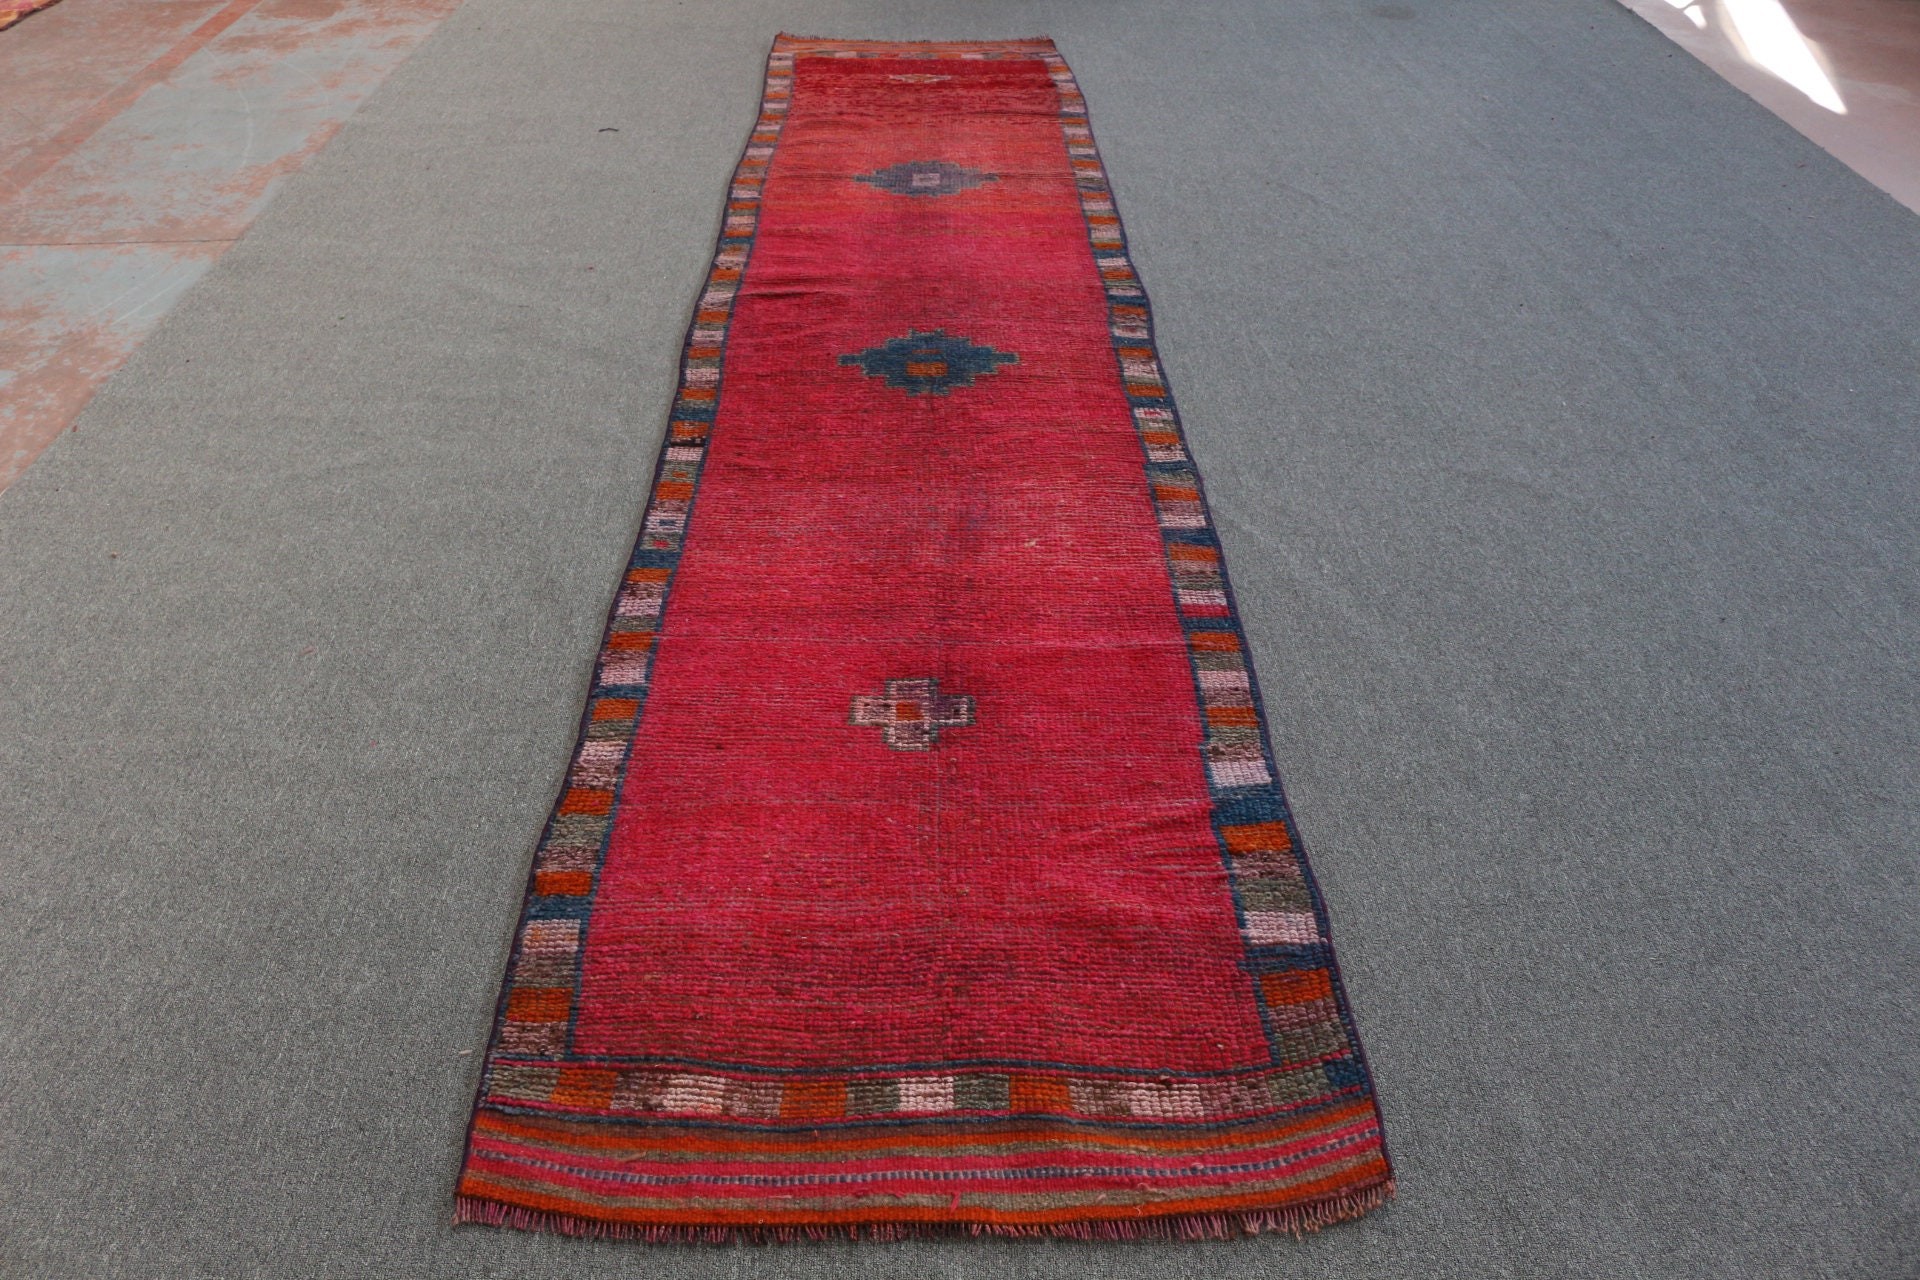 Hallway Rug, Red Cool Rugs, Corridor Rug, 2.9x13.2 ft Runner Rug, Rugs for Corridor, Turkish Rugs, Vintage Rug, Antique Rug, Oushak Rugs